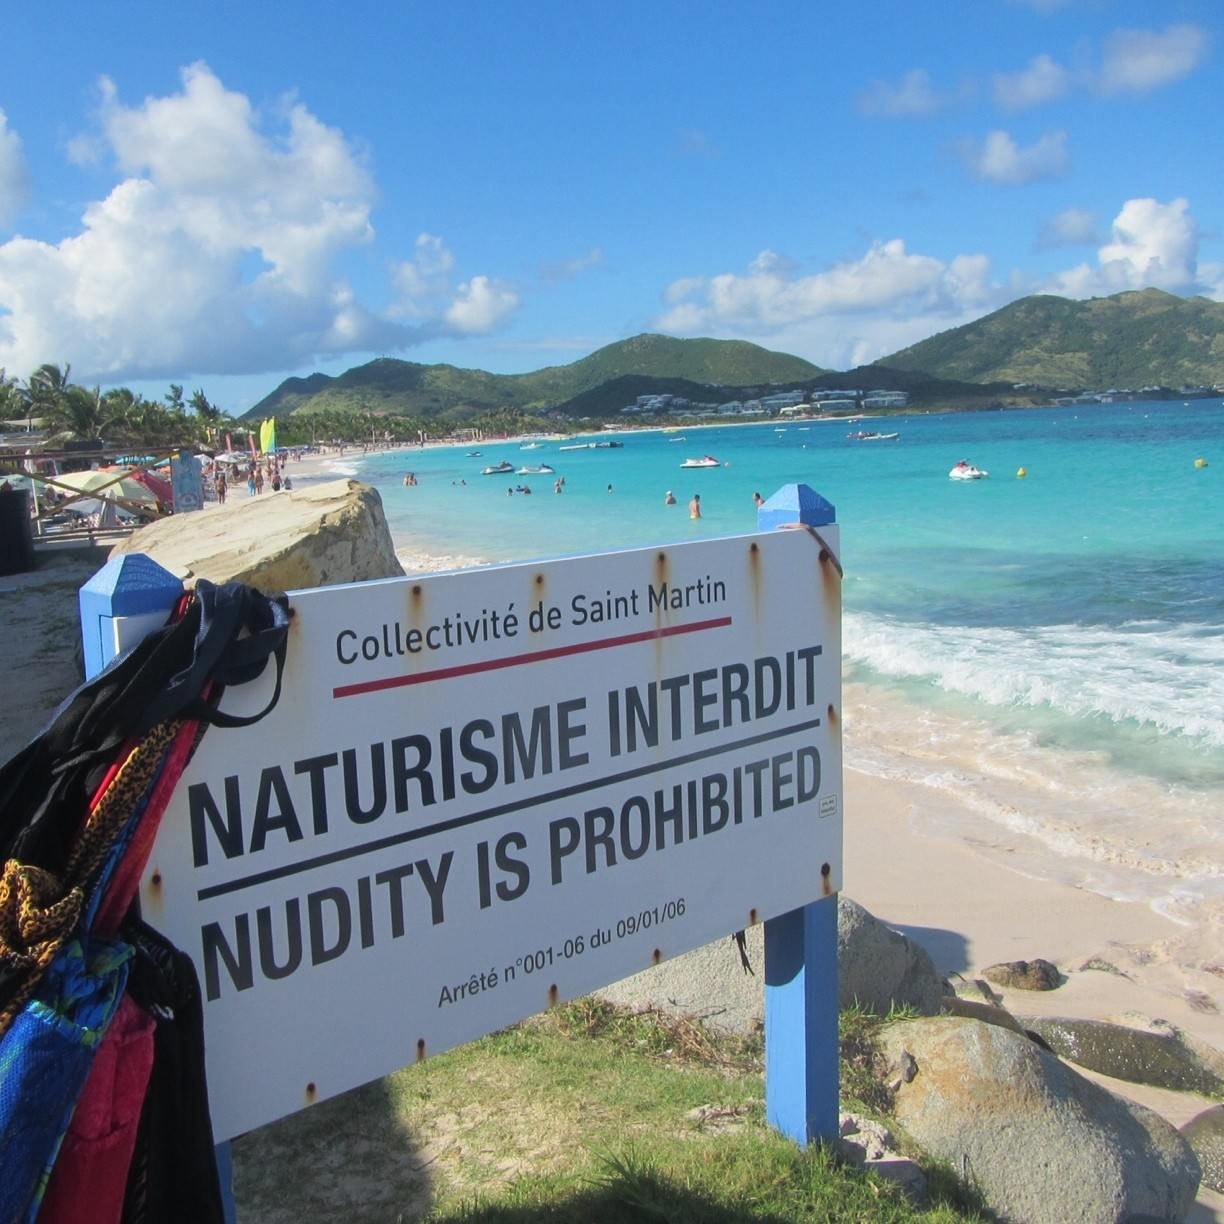 Nudist resort in san